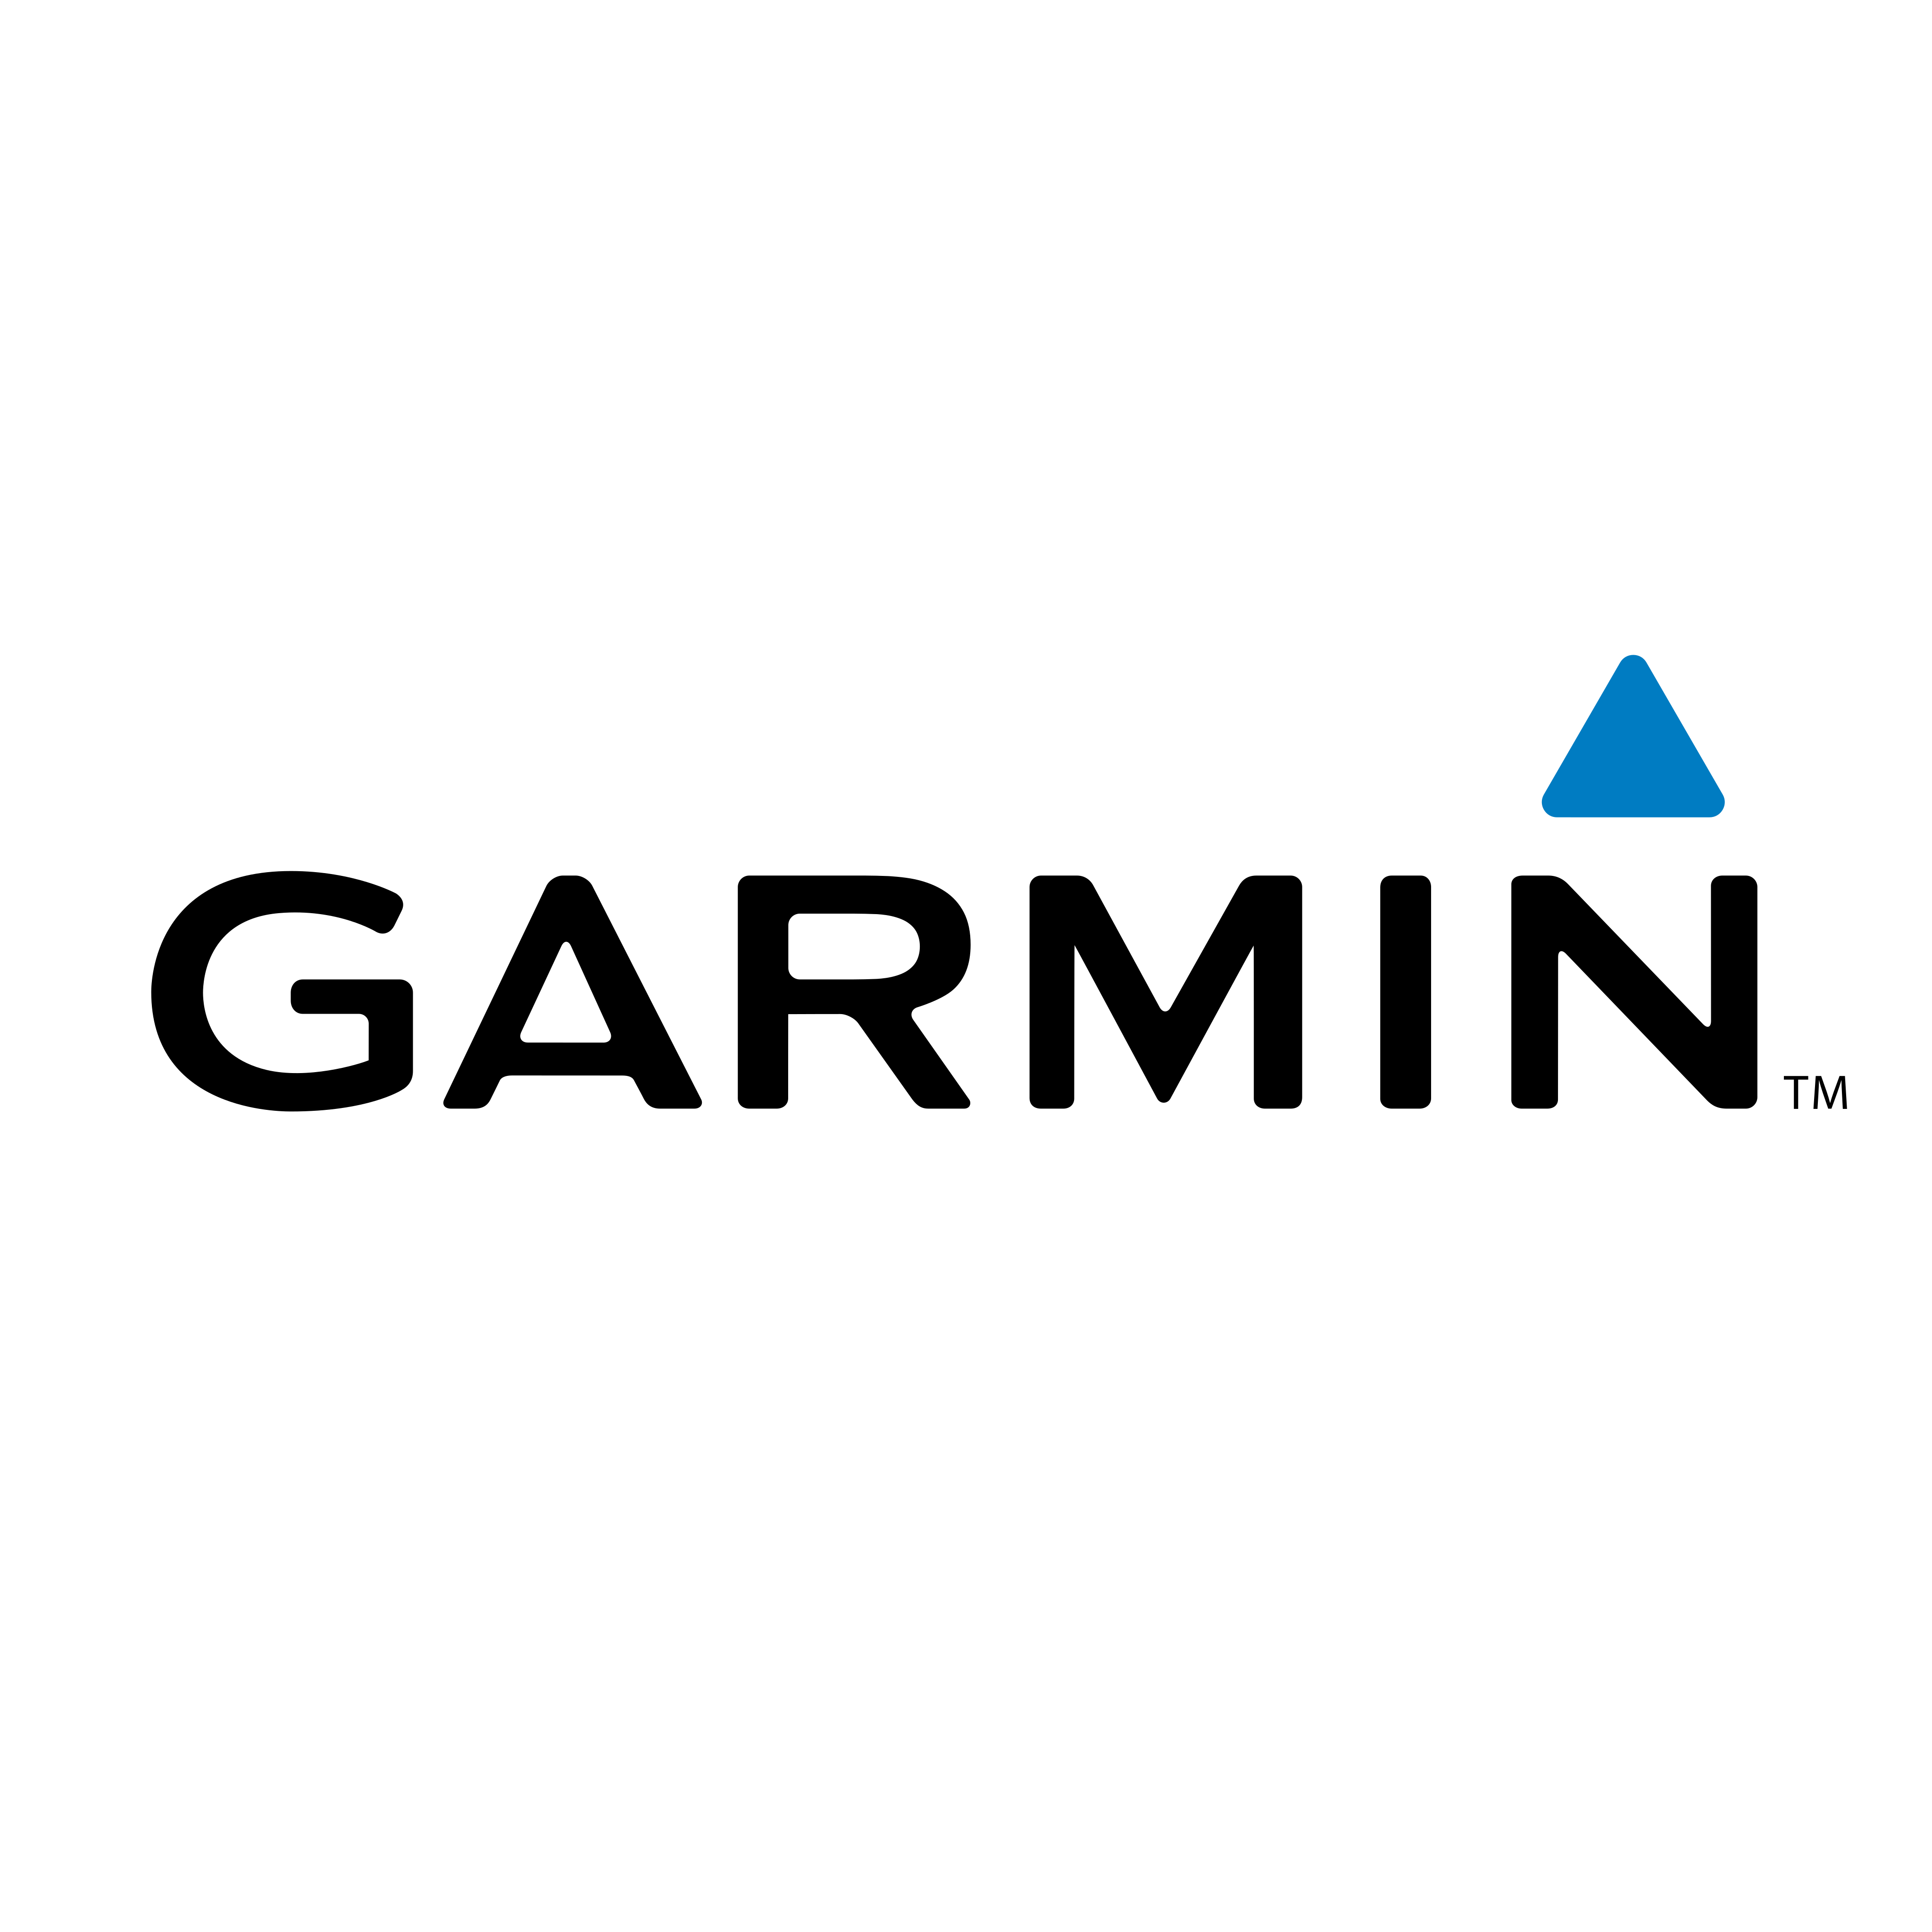 Garmin Logo PNG.